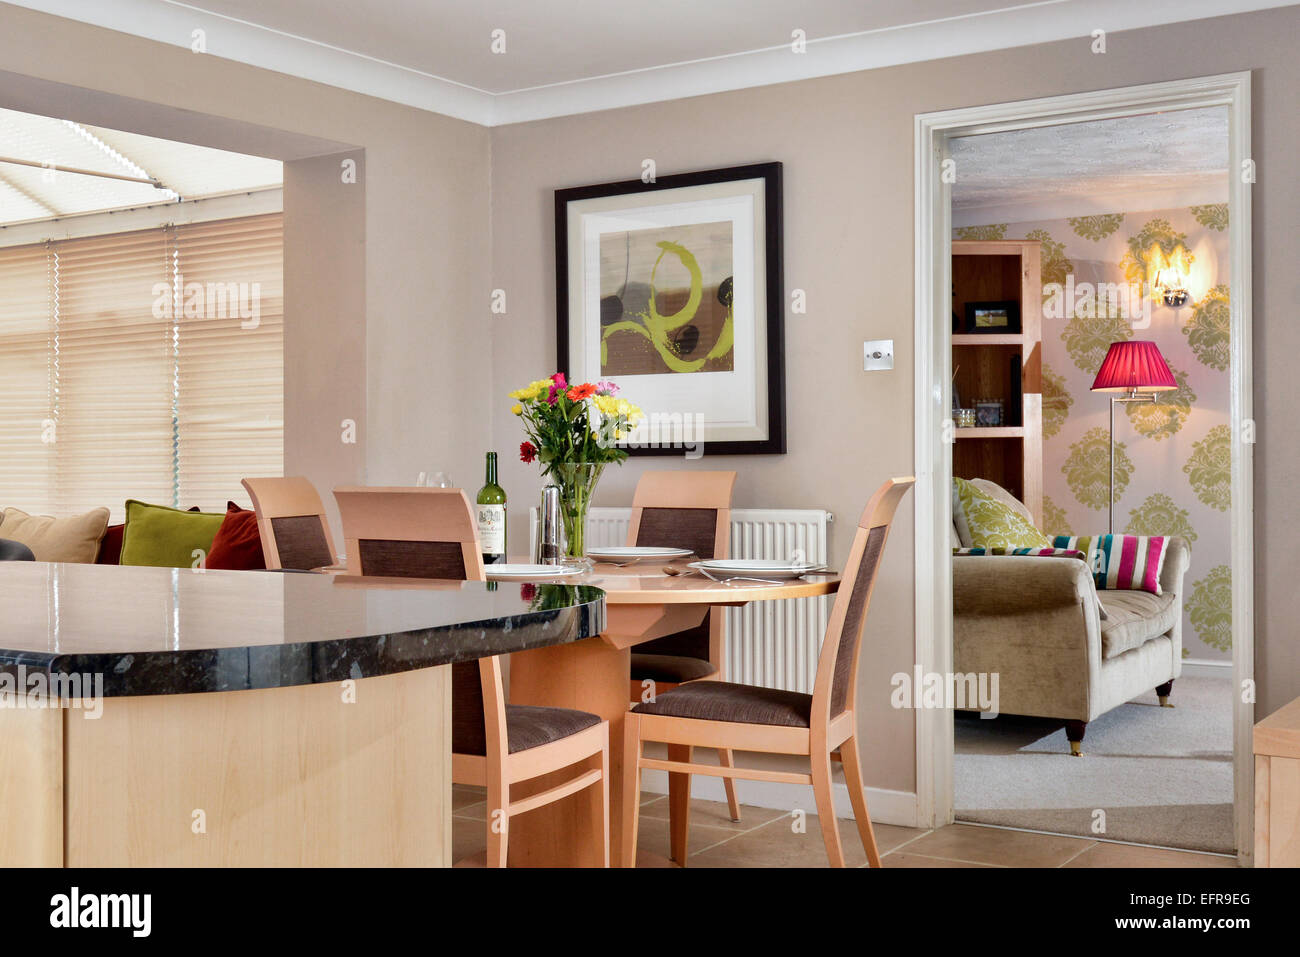 Un intérieur de maison moderne montrant l'espace cuisine, salle à manger et c'est la connexion à la salle de séjour Banque D'Images